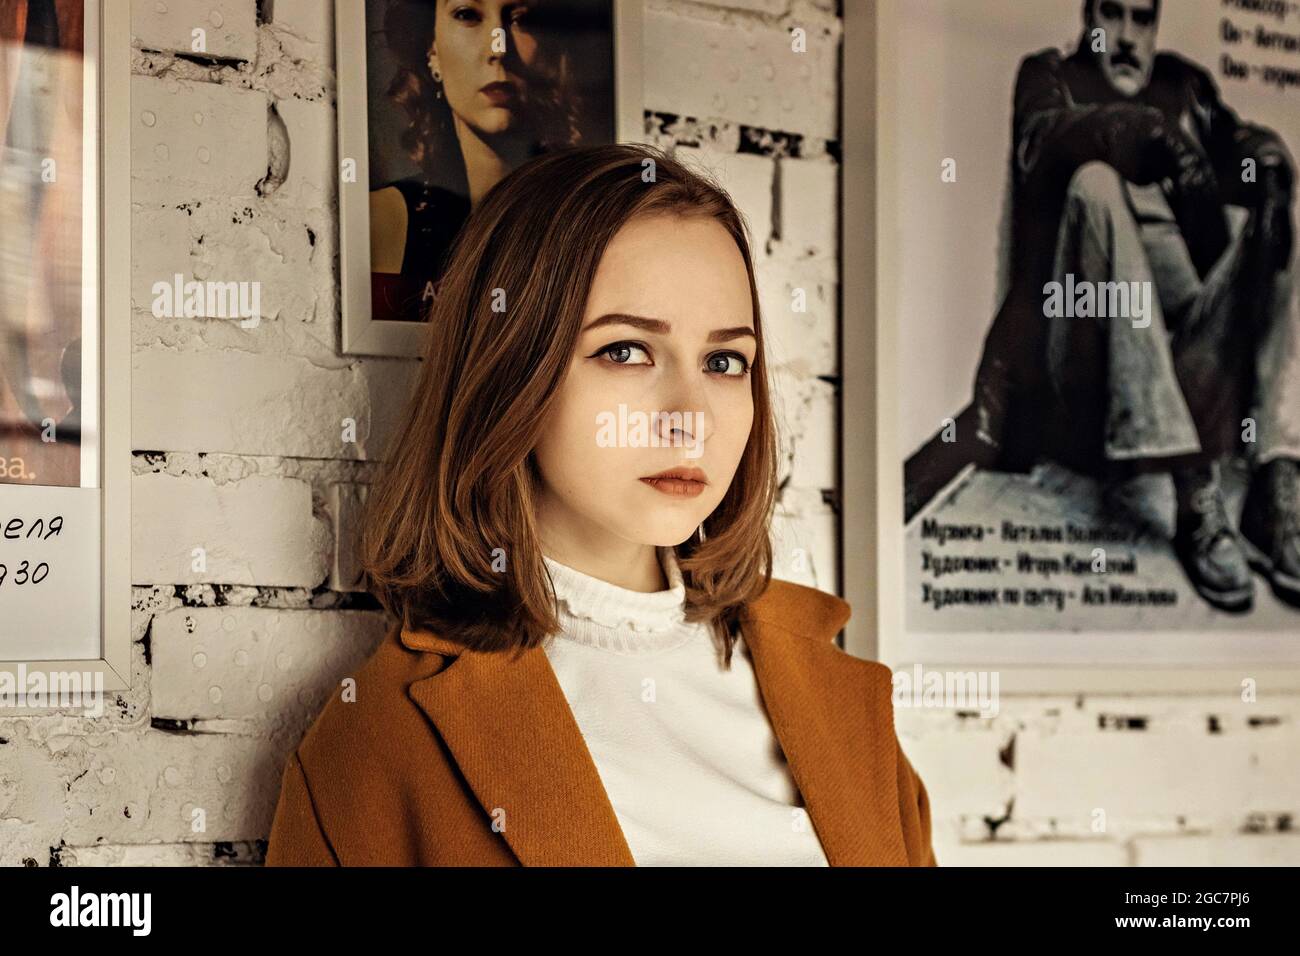 Ritratto di una giovane adolescente contro una parete bianca di mattoni con un poster. Foto Stock